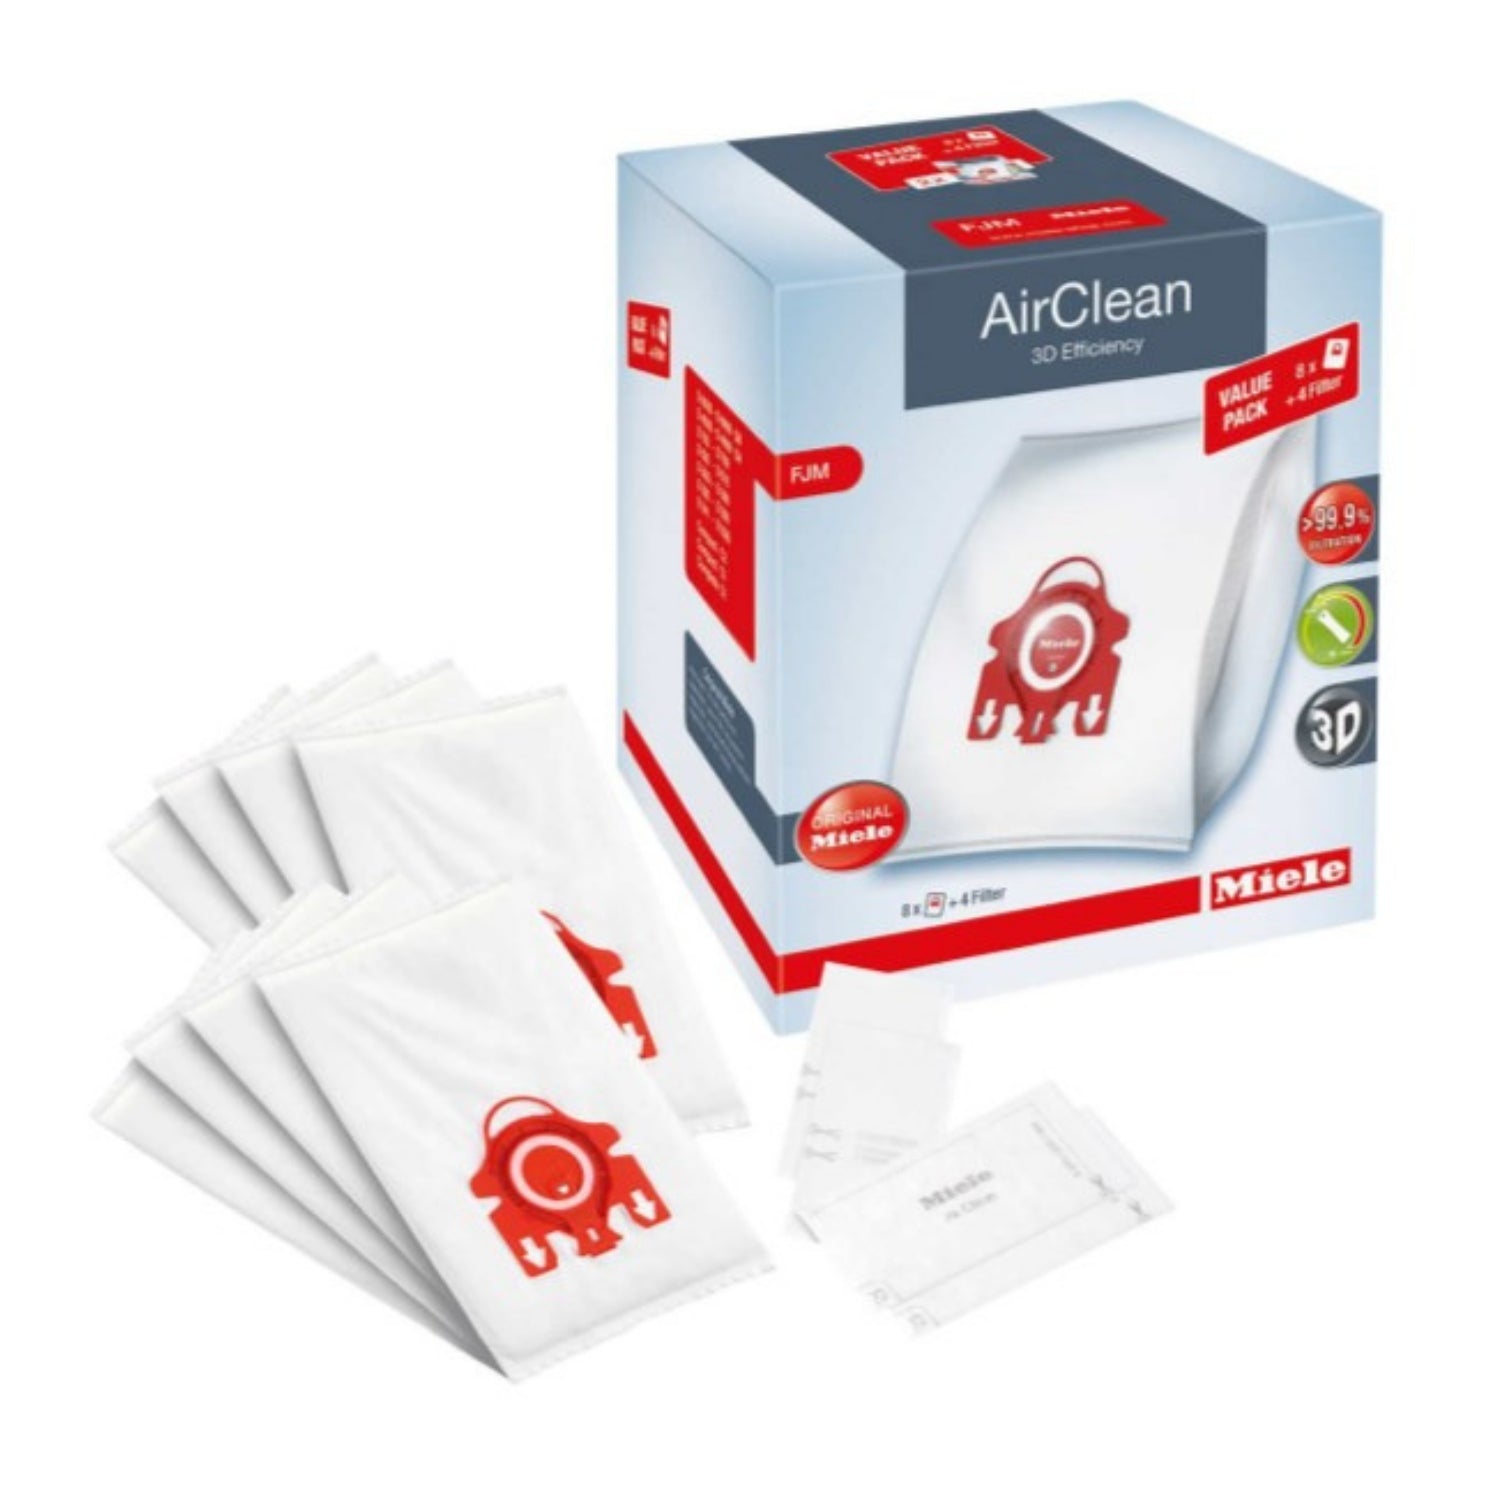 Miele - XL Pack HyClean 3D FJM sacs d'aspirateur…